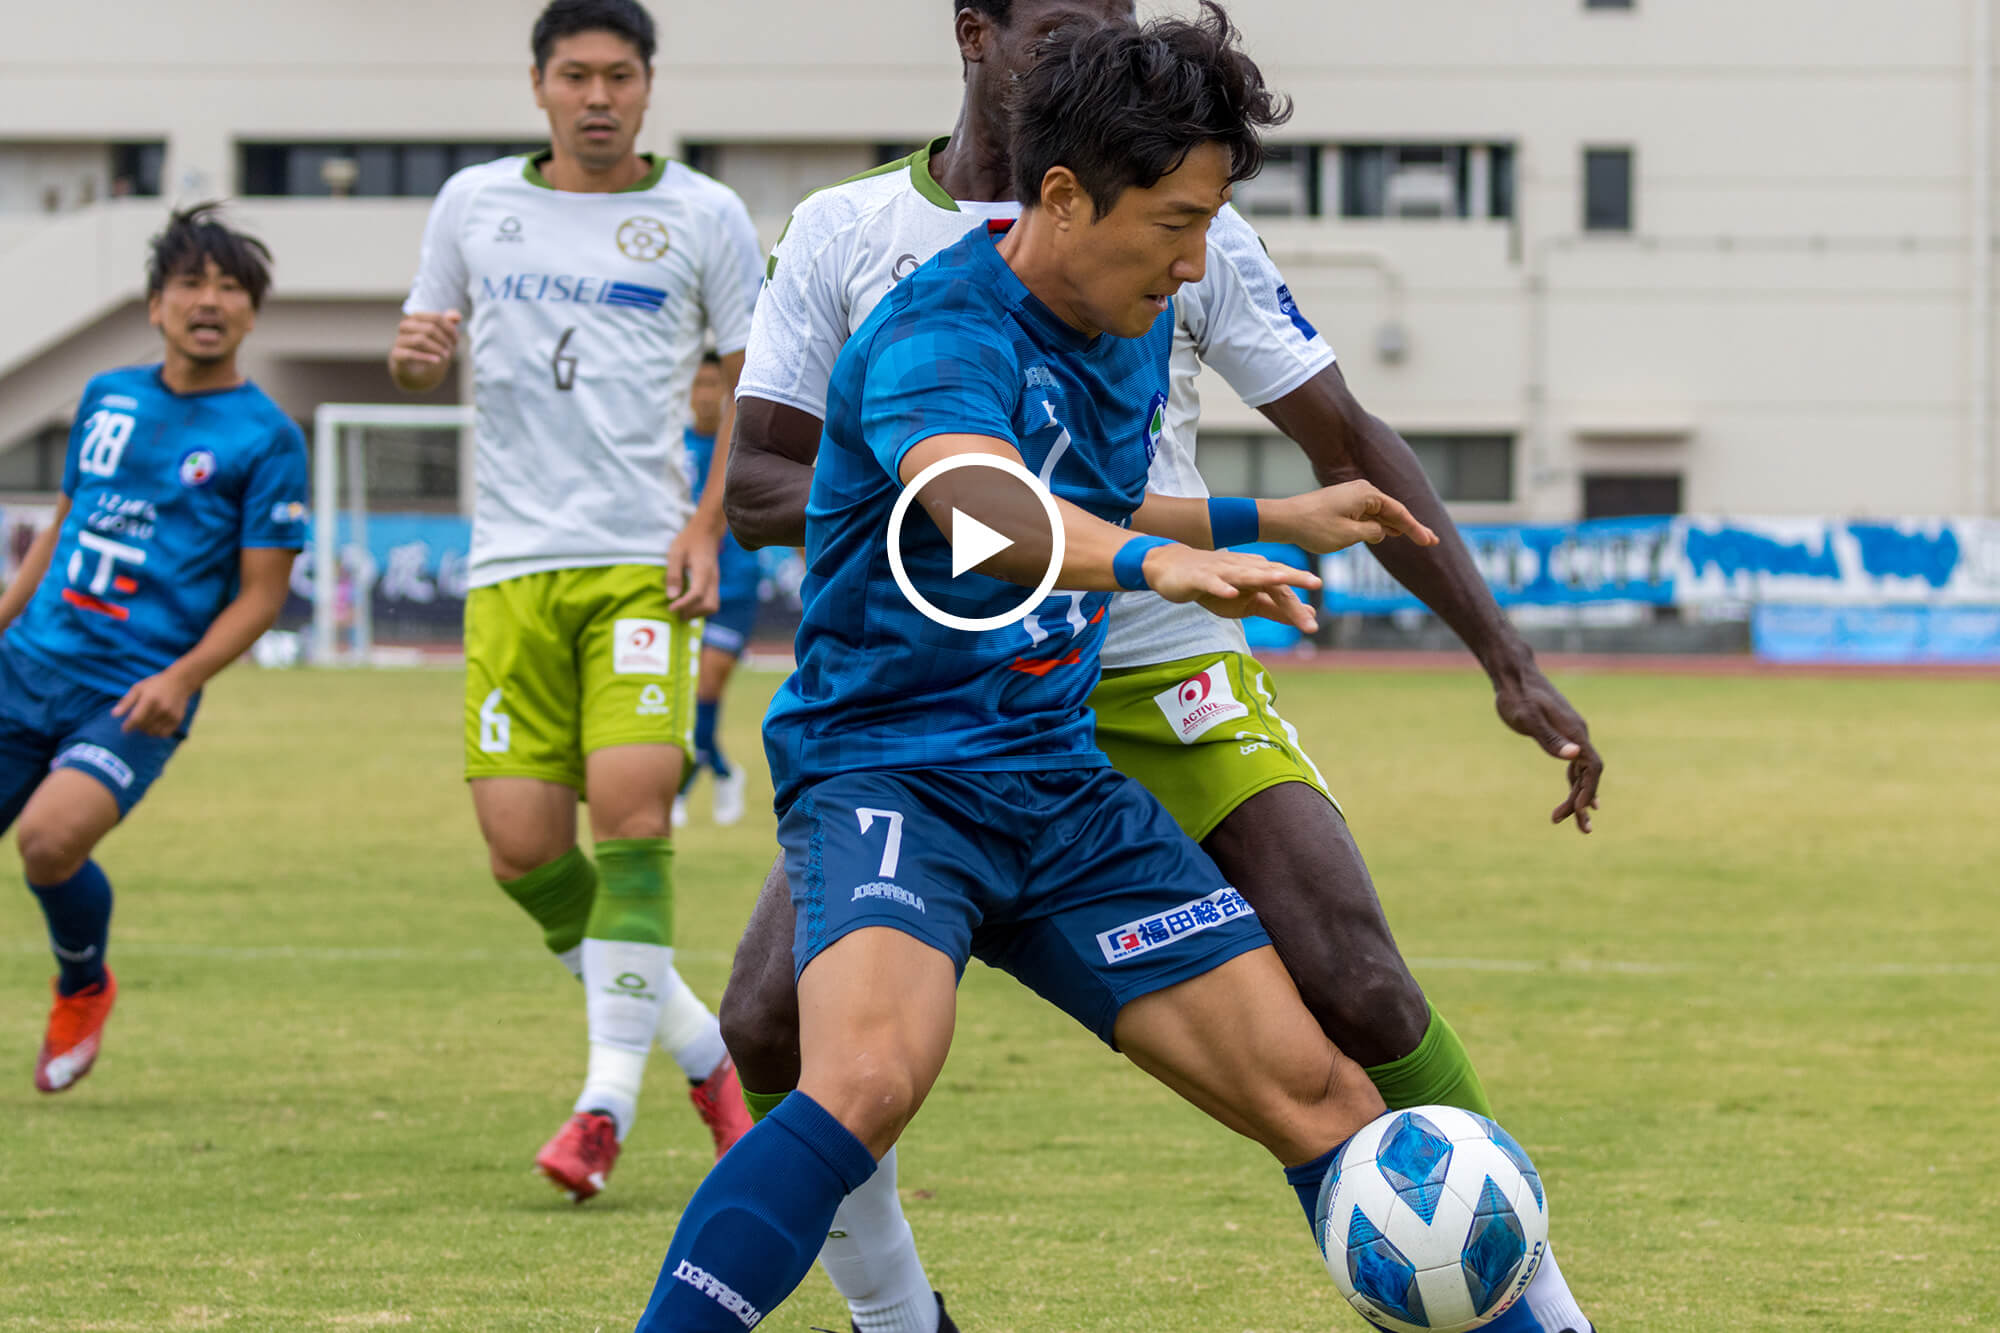 Fc Tiamo枚方 Vs おこしやす京都ac 関西サッカーリーグ Division1 第7節 Reibola 新しいサッカーメディア